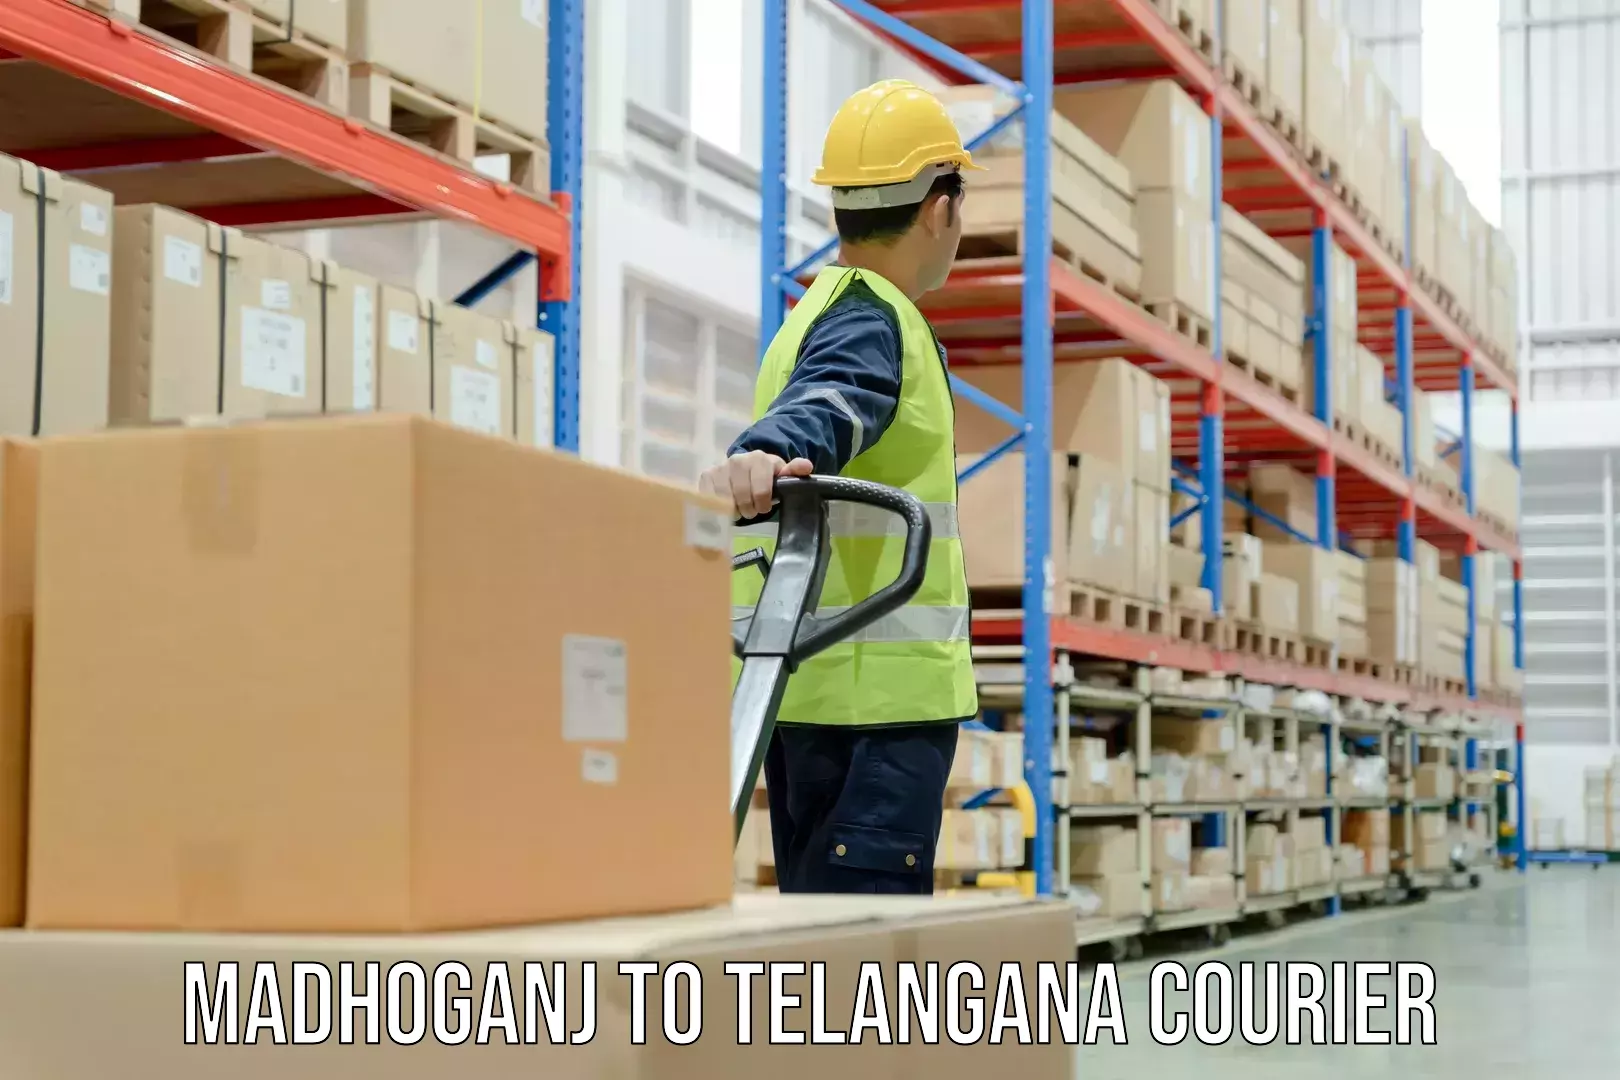 Efficient shipping operations Madhoganj to Mudigonda